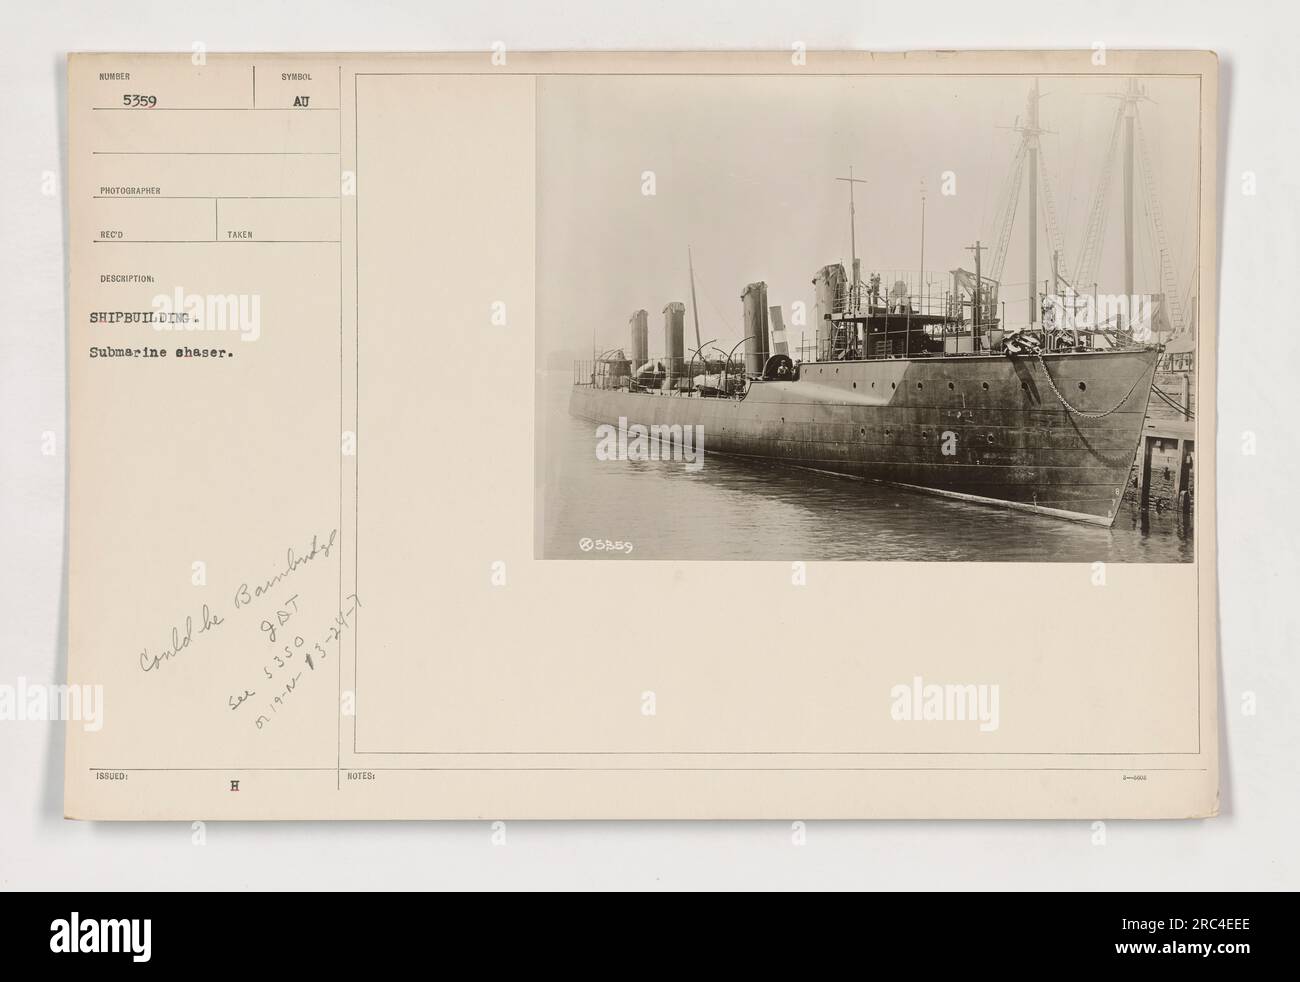 Ein Foto, das während des Ersten Weltkriegs aufgenommen wurde und ein U-Boot-Jäger zeigt, der in den Schiffbau verwickelt ist. Die U-Boot-Verfolgungsjagd ist mit „SYNDOL ATT H JAT“ (möglicherweise Bainbutyl) gekennzeichnet, und das Bild ist mit 111-SC-5359 nummeriert. Weitere Informationen geben einen Preis von $350 und das Datum 13. August 1919 an.“ Stockfoto